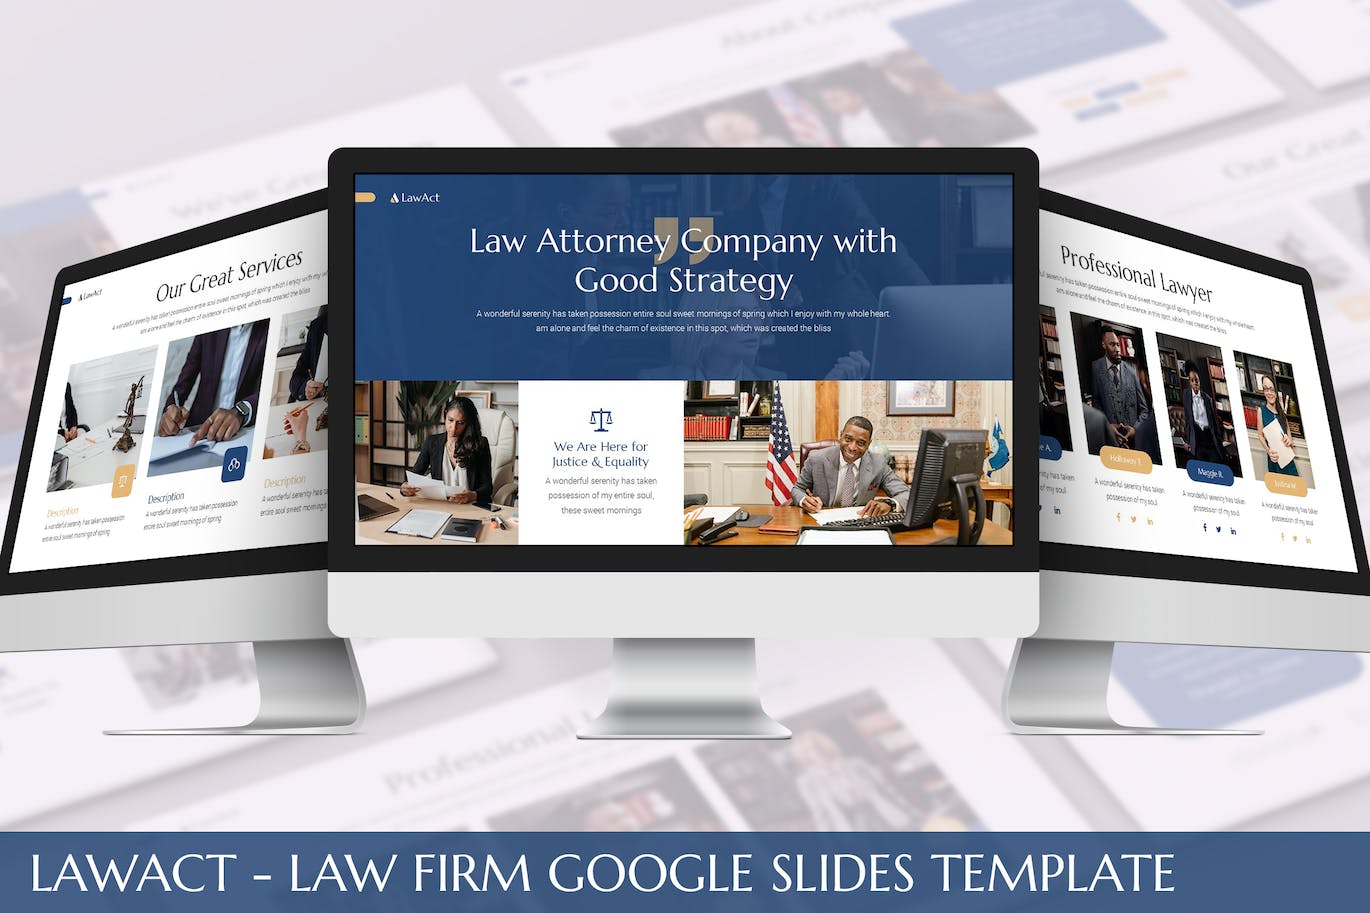 律师事务所Google幻灯片模板素材 Lawact – Law Firm Google Slides Template 幻灯图表 第1张